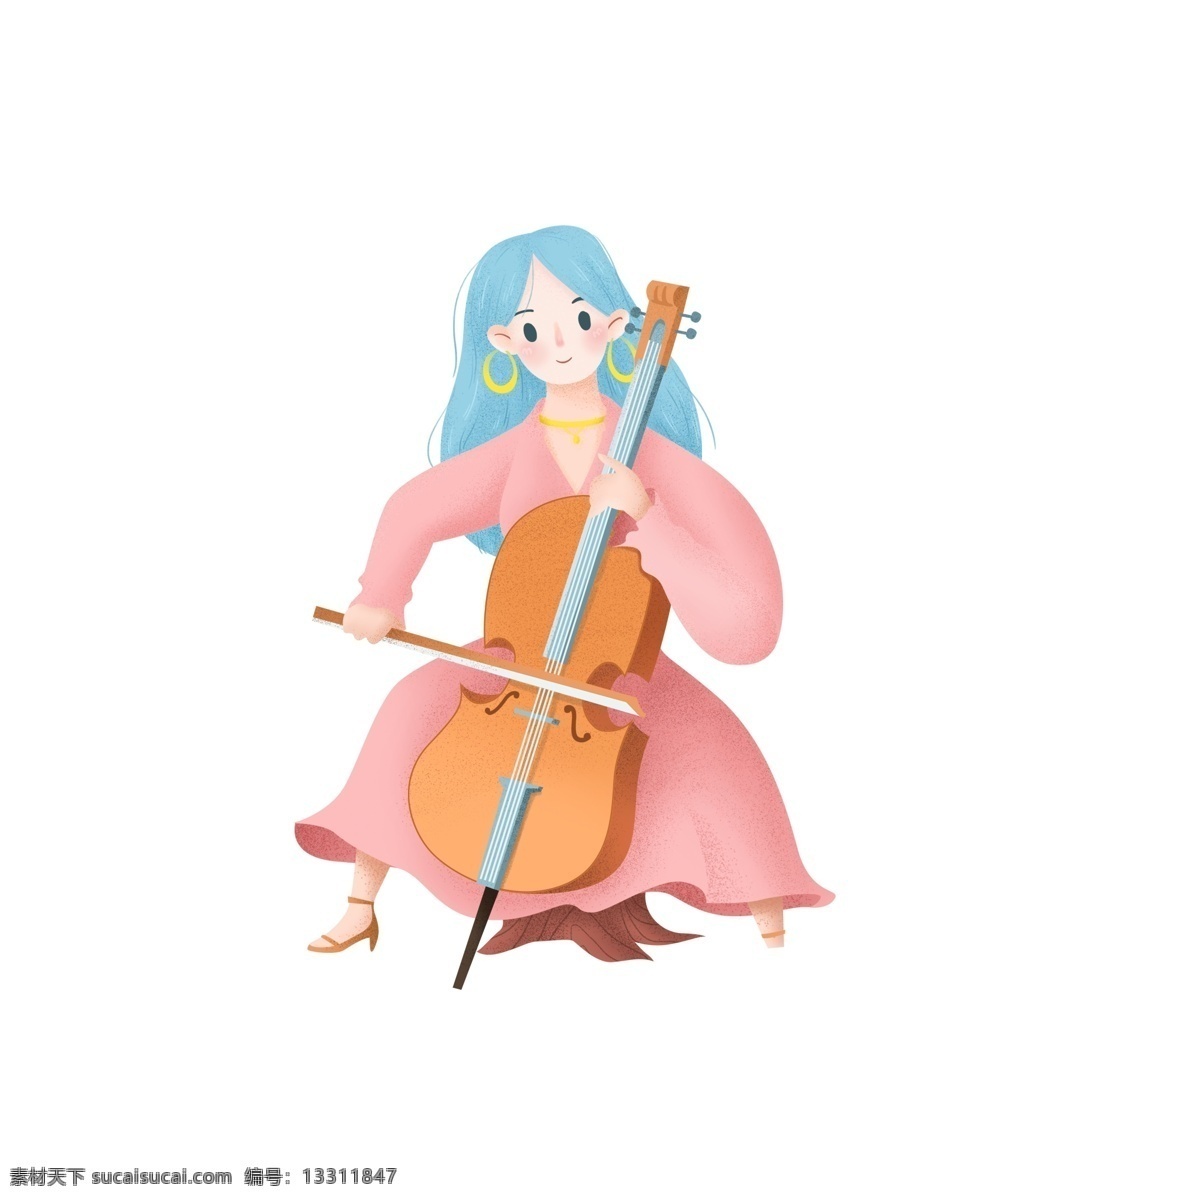 原创 唯美 大提琴 女孩 元素 创意 元素设计 透明素材 插画